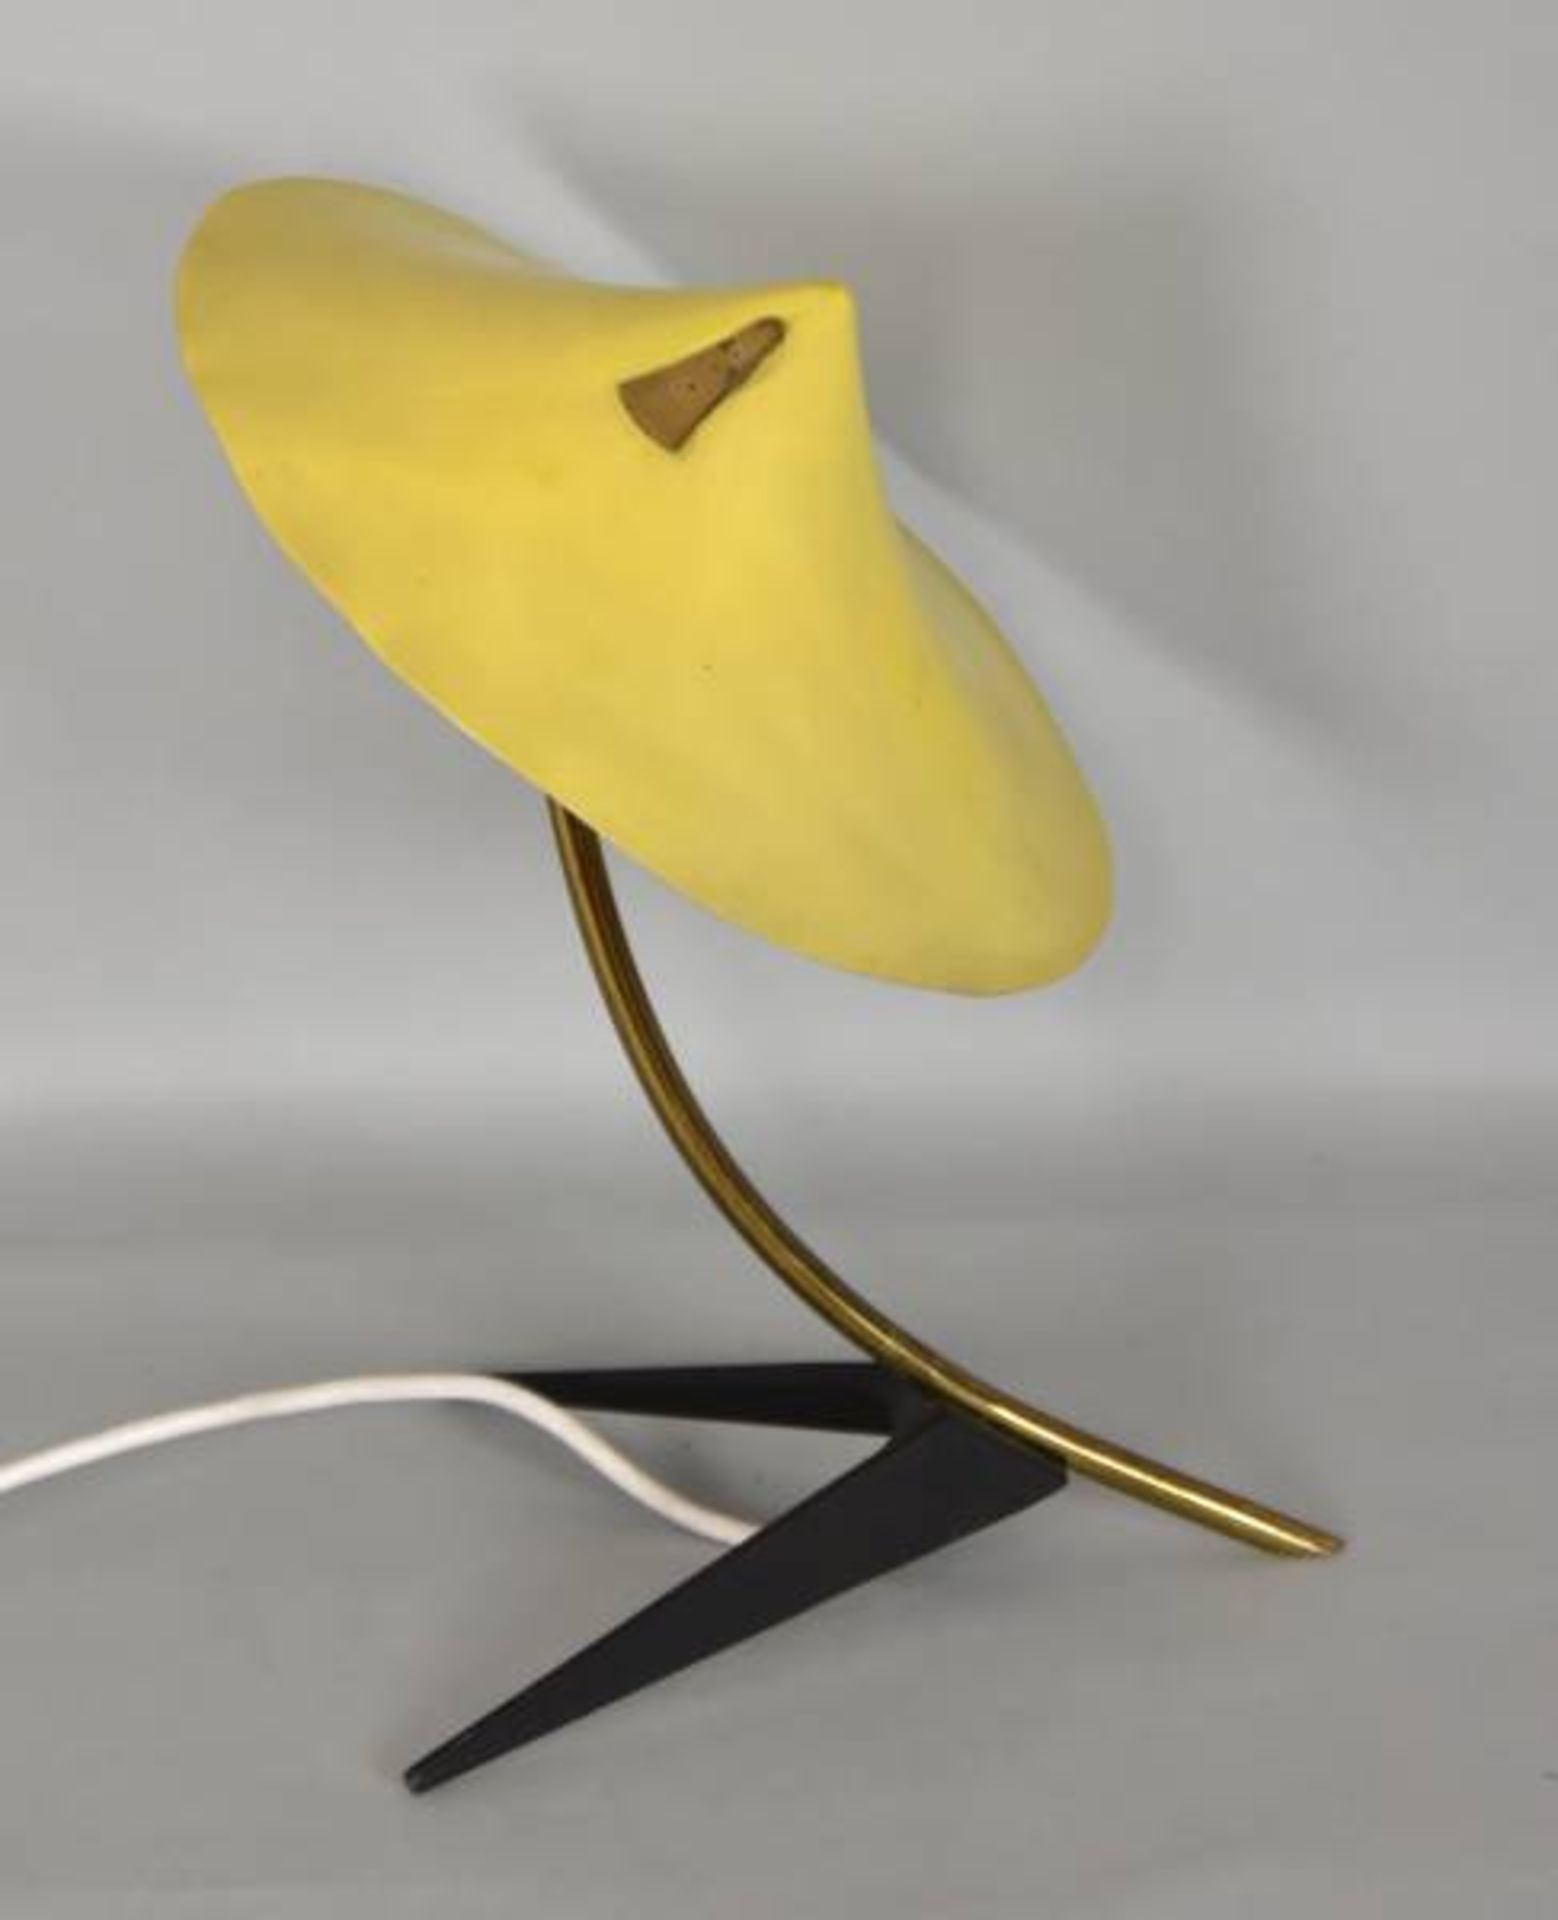 KRÄHENFUSSLAMPE Gelber Schirm aus Alu, geformt wie ein Hut, gebogter Schaft aus Messing,